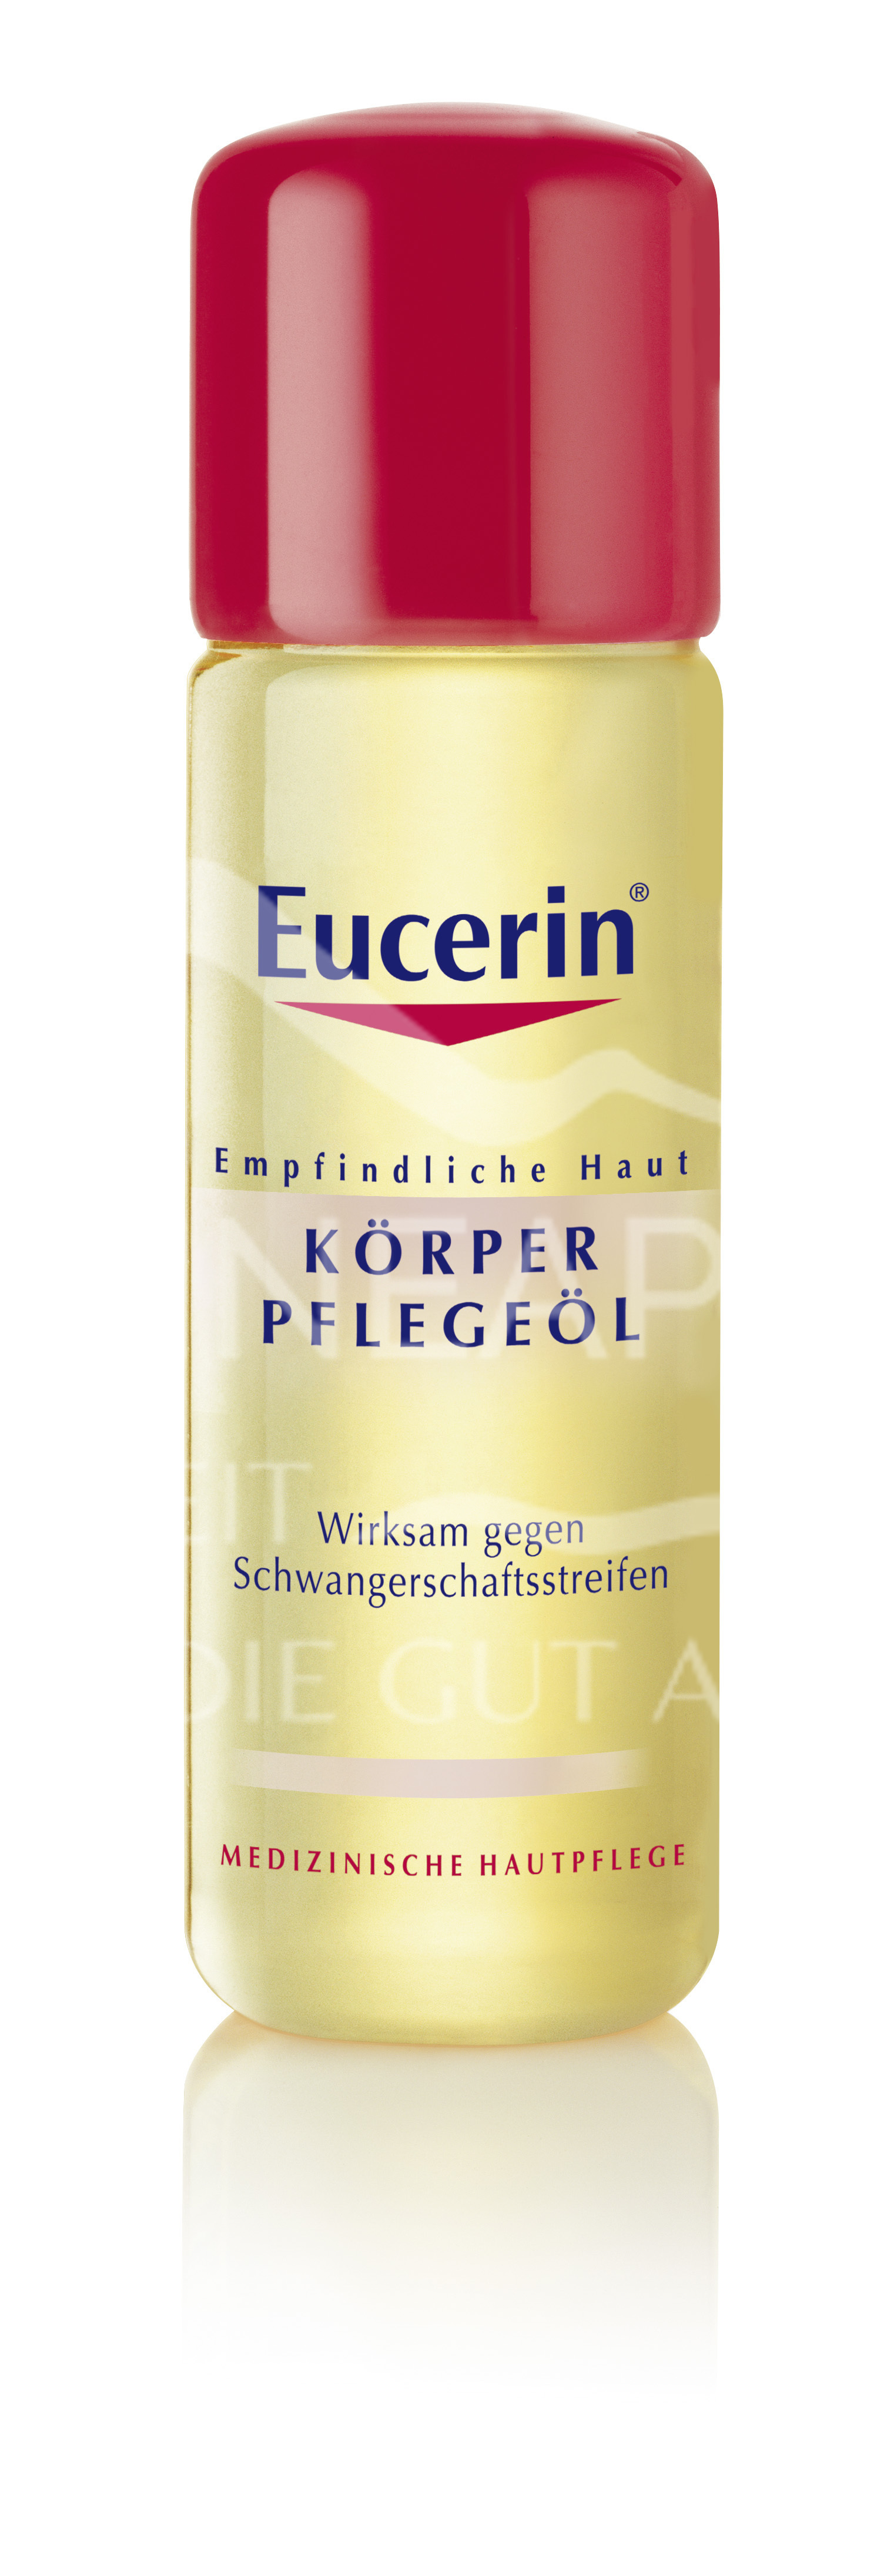 Eucerin® Körperpflegeöl